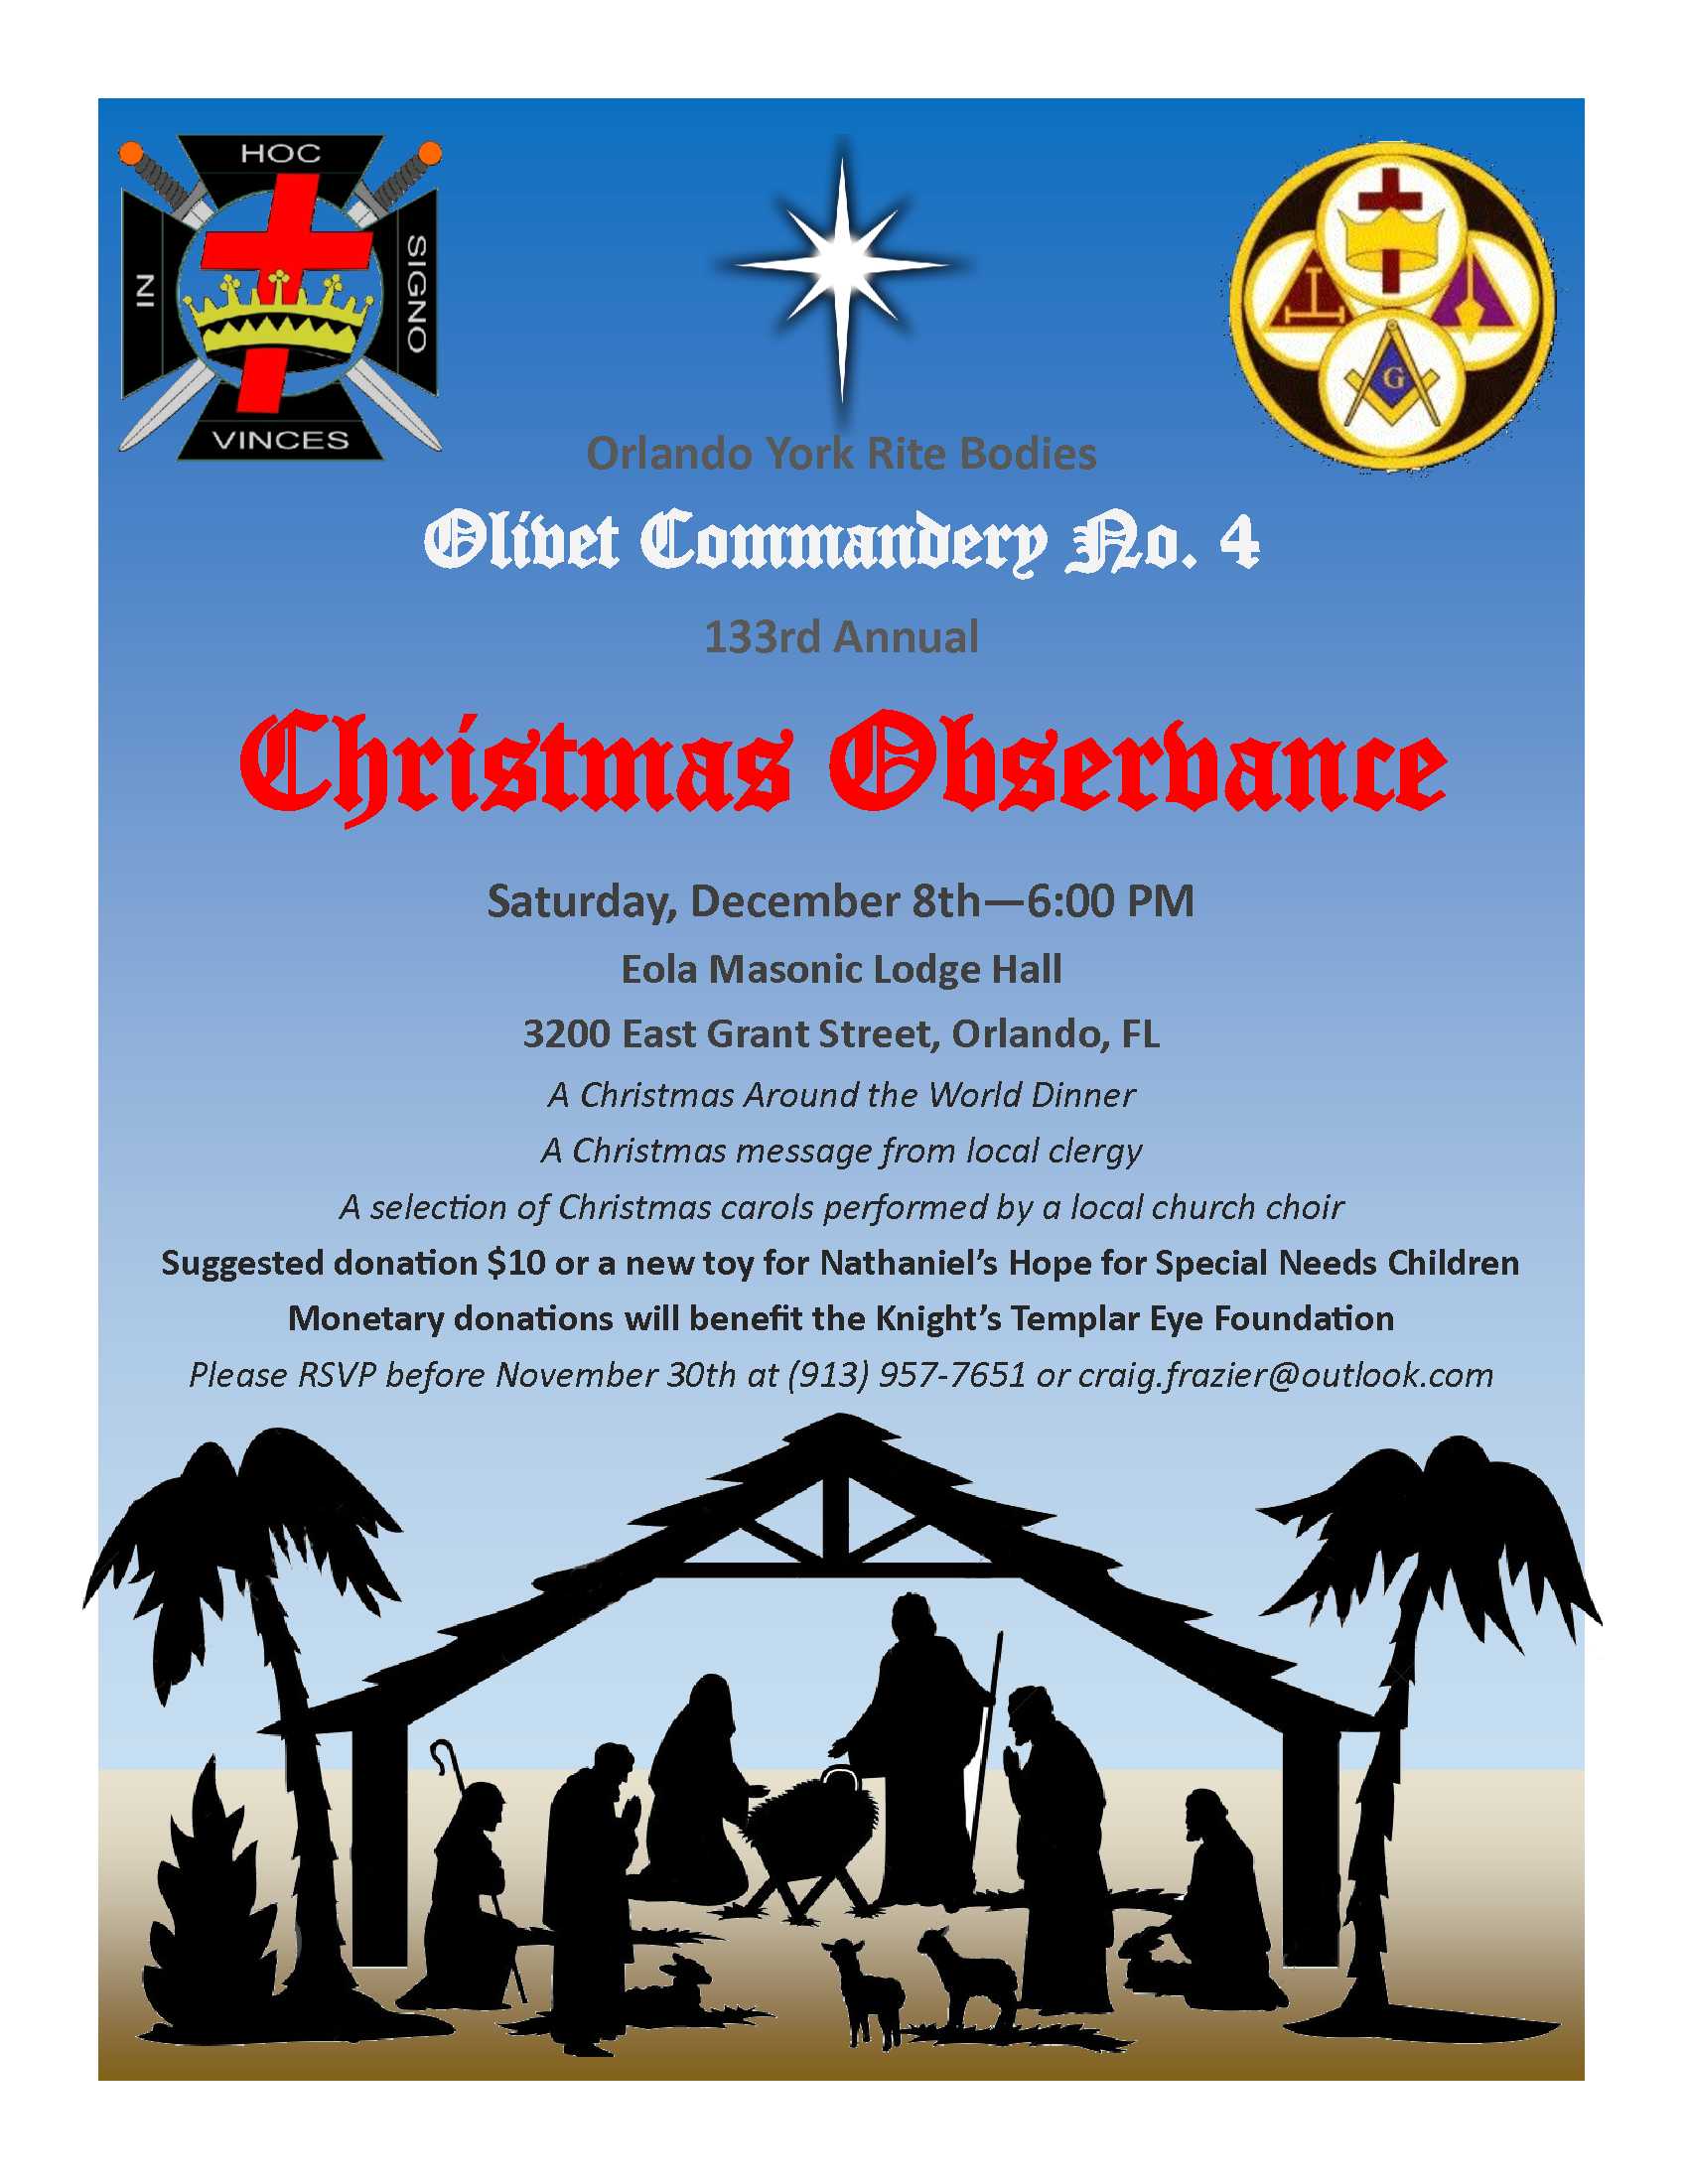 Olivet Christmas Observance December 8, 2018 GRAND YORK RITE OF FLORIDA